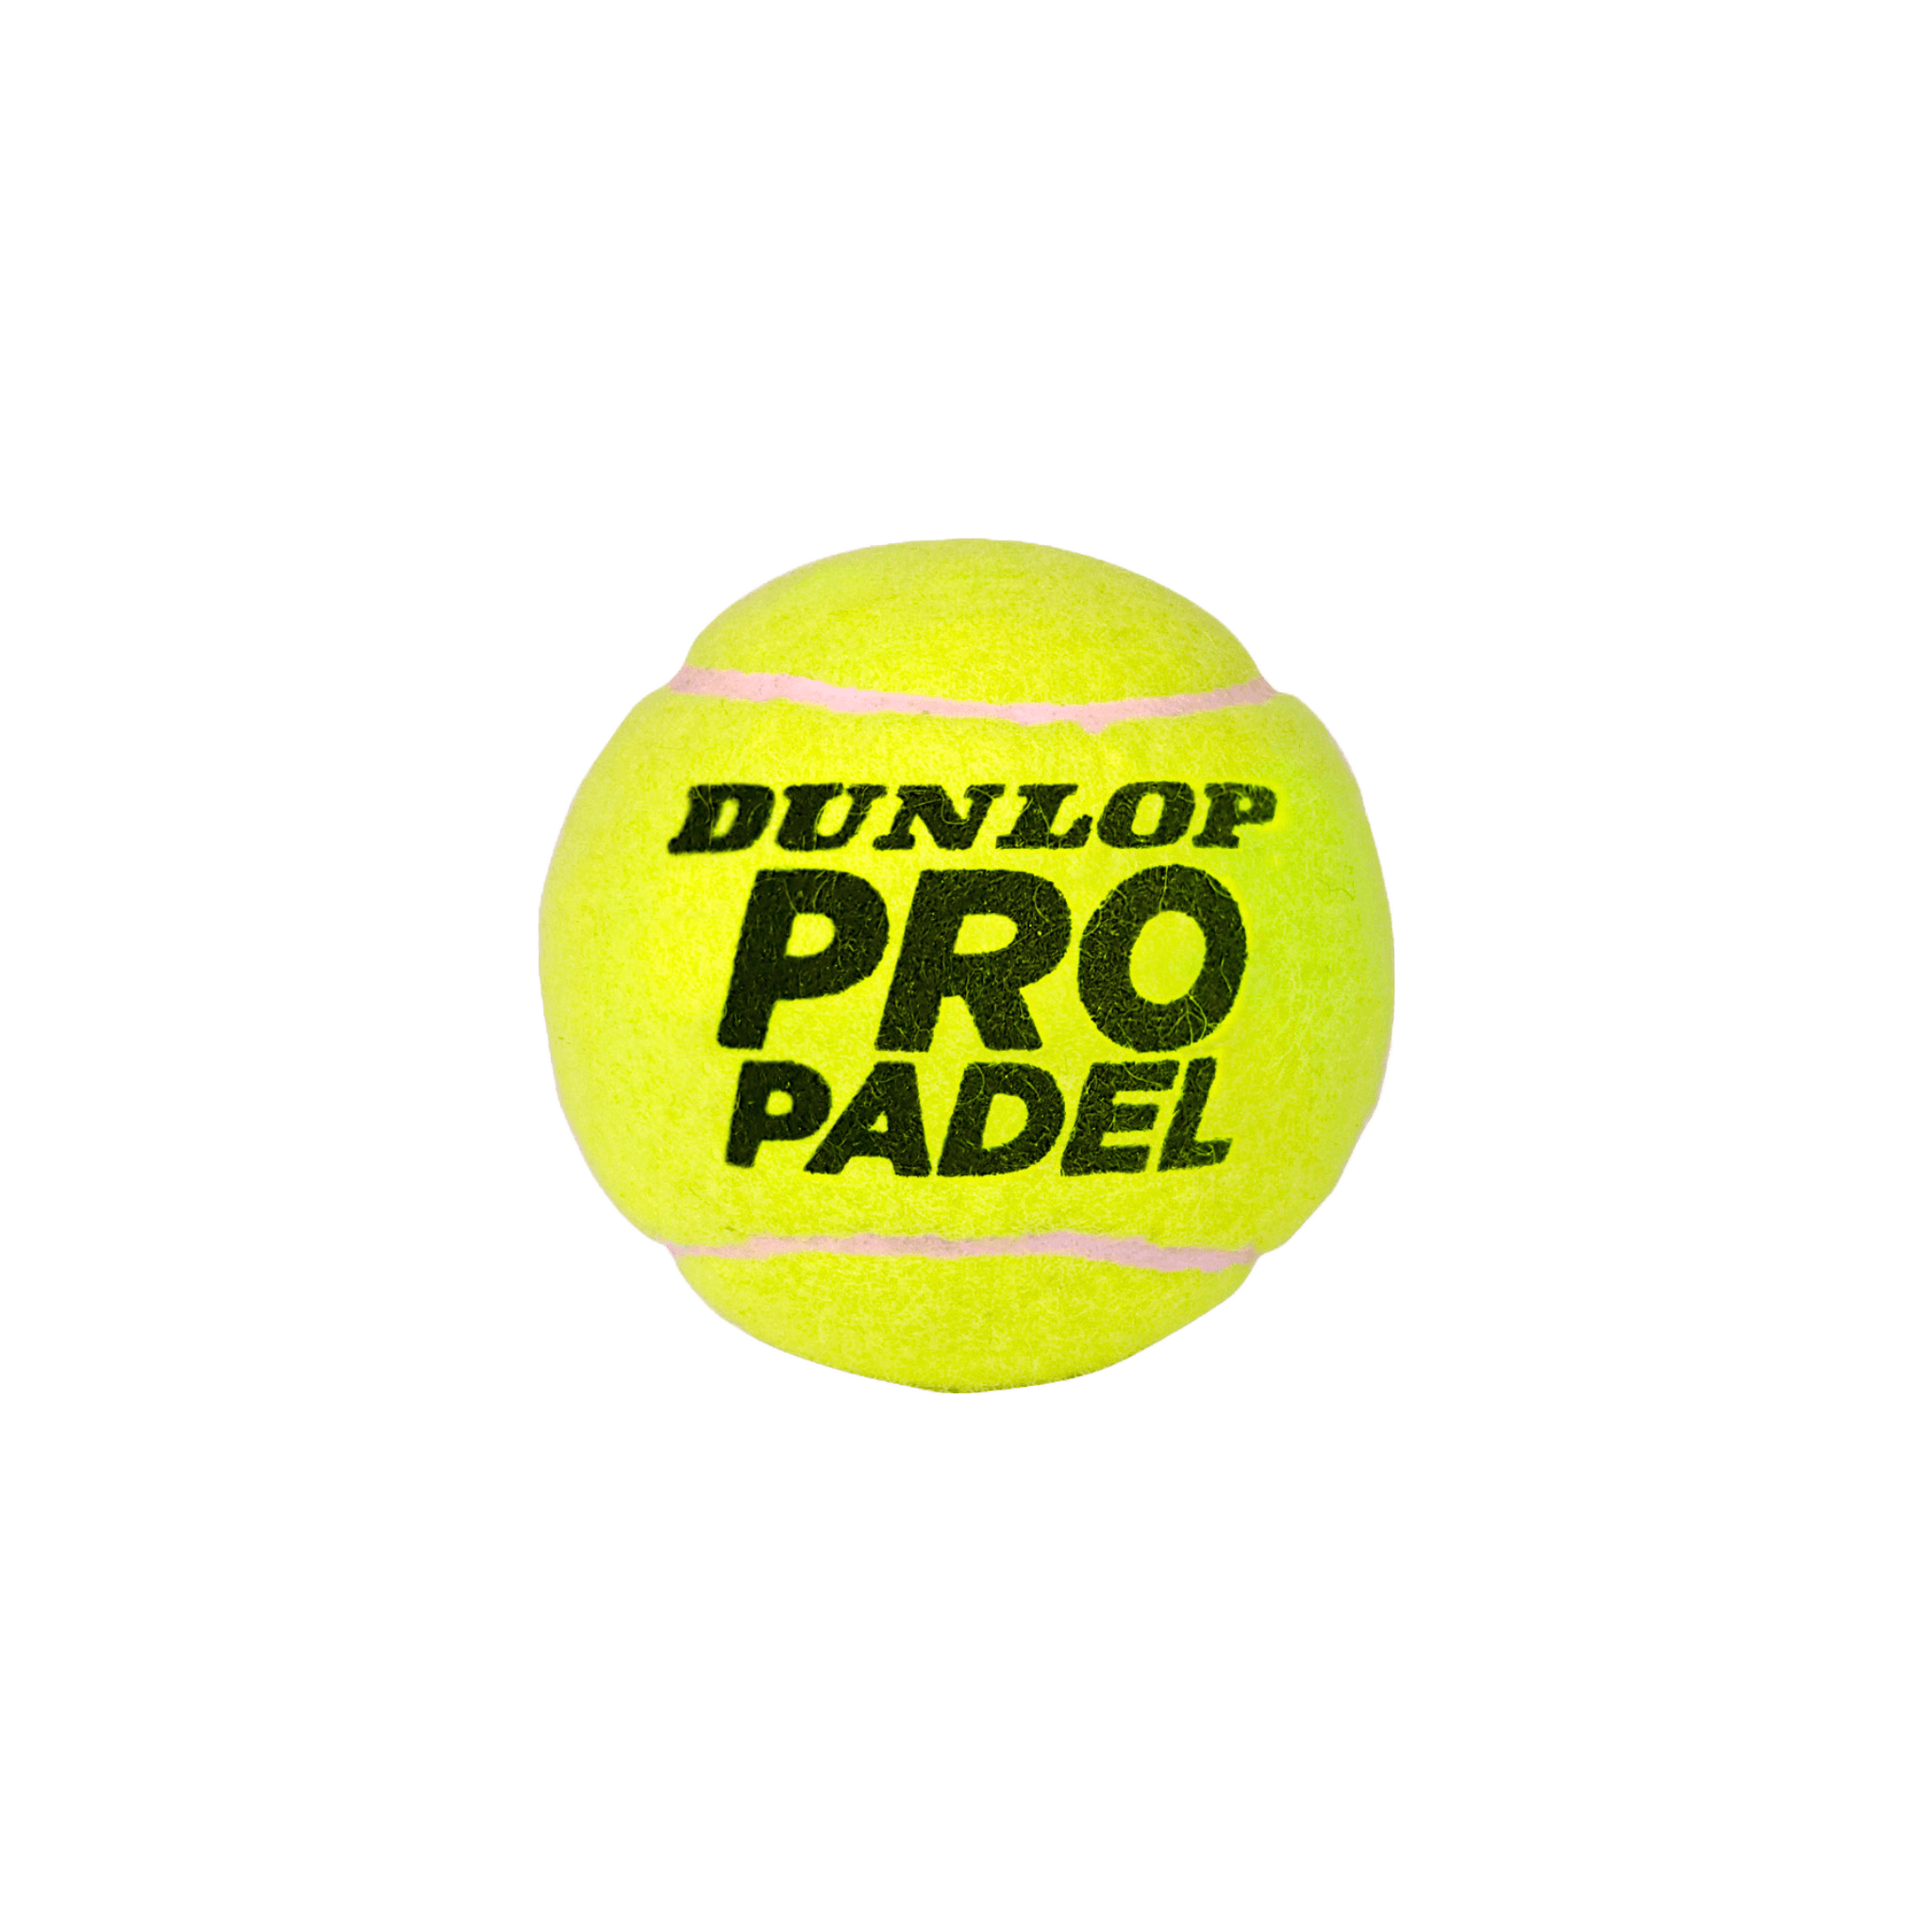 Dunlop Pro Padel padelballen - PadelAmigos